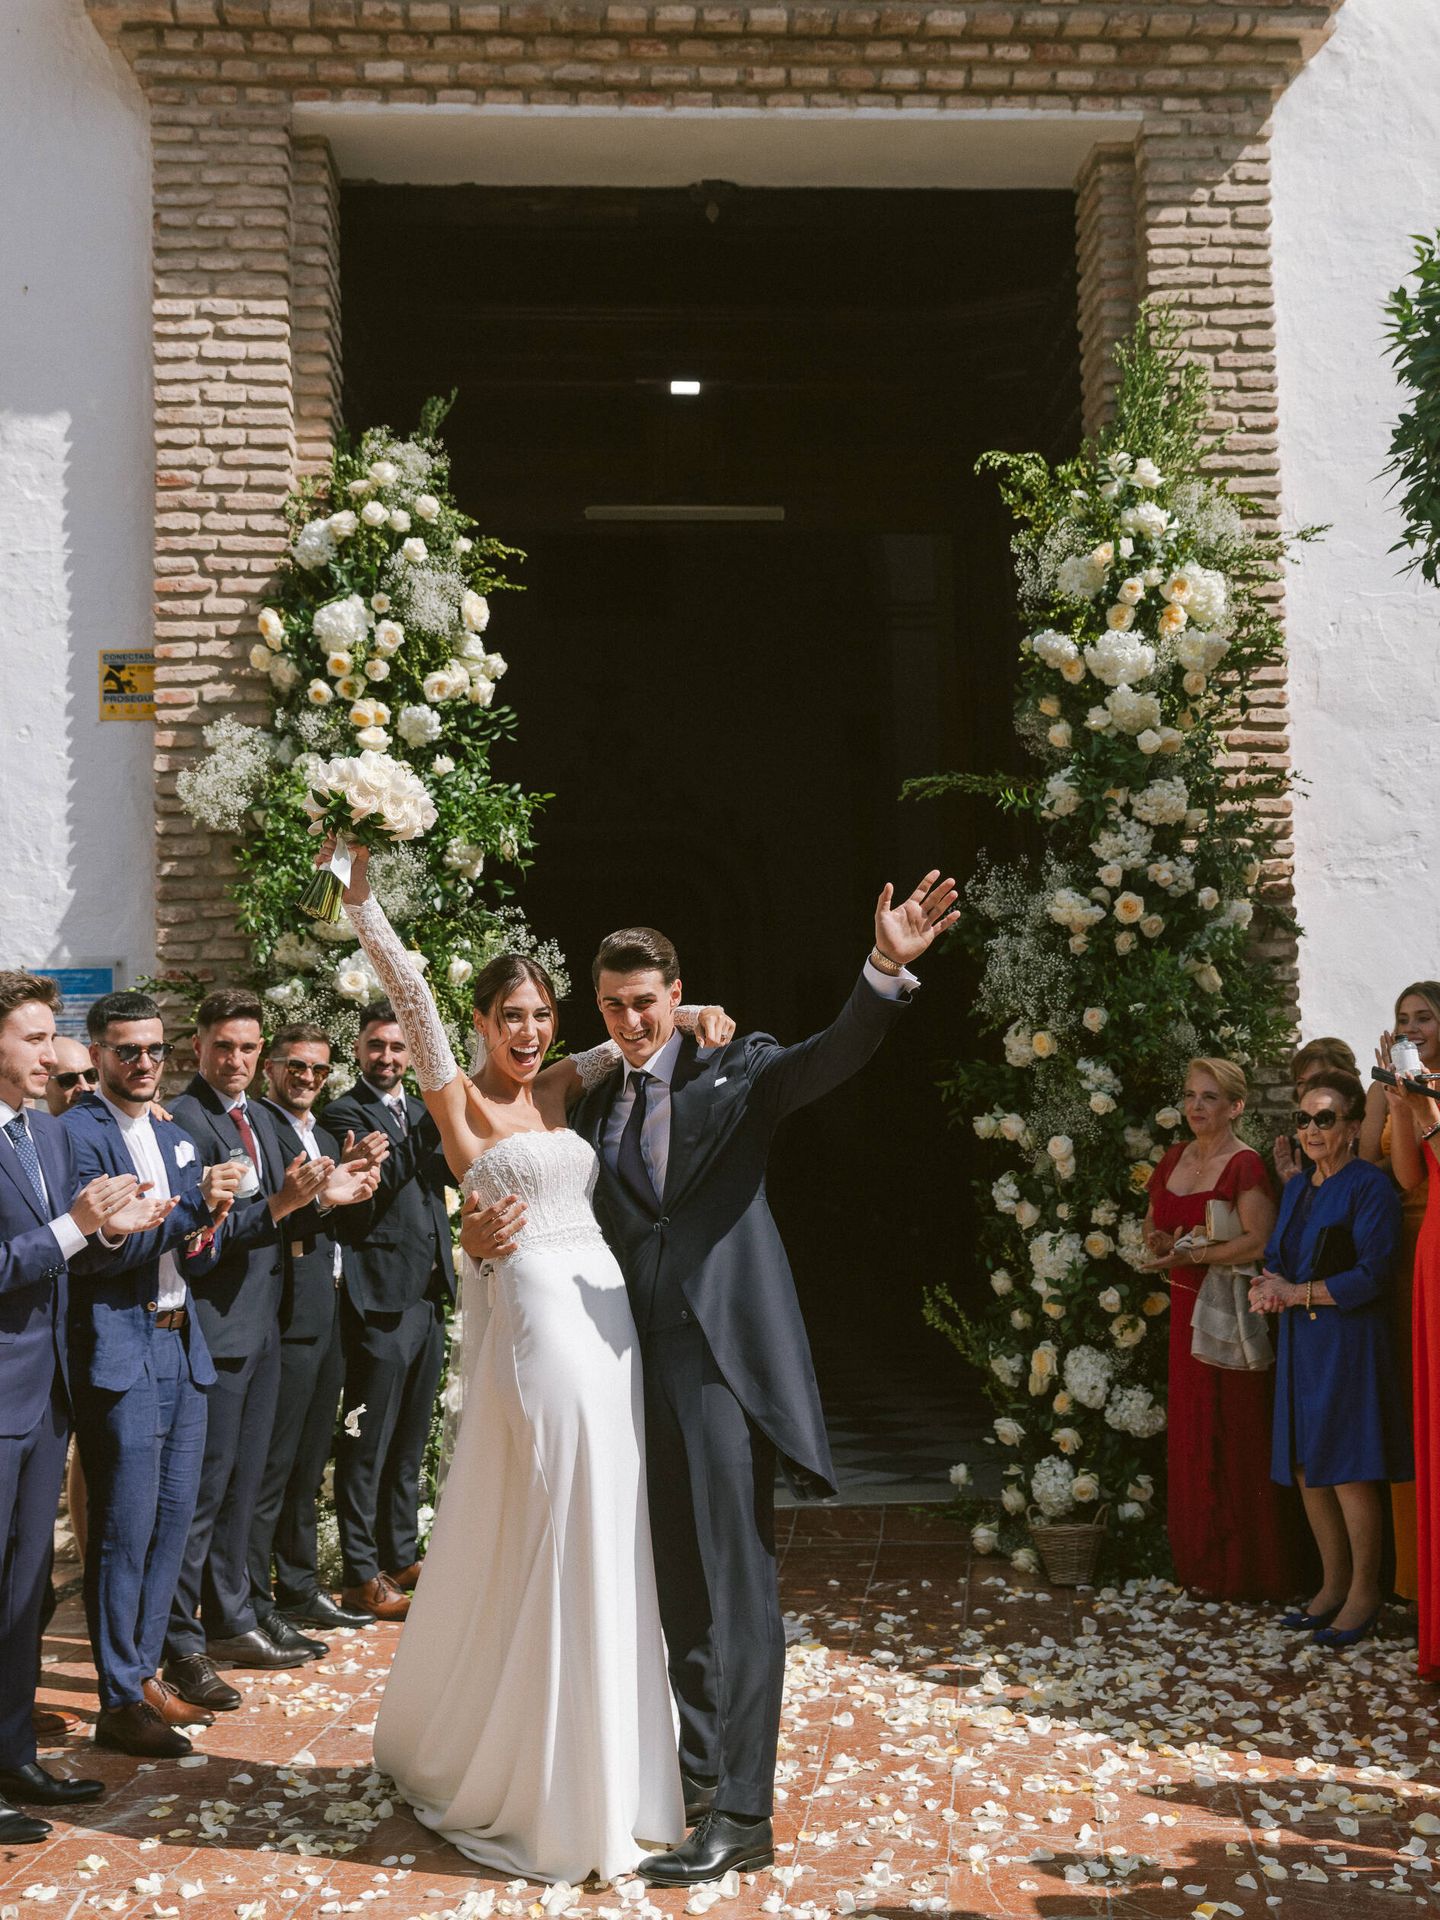 La boda de Kepa Arrizabalaga y Andrea Martínez. (Volvoreta)